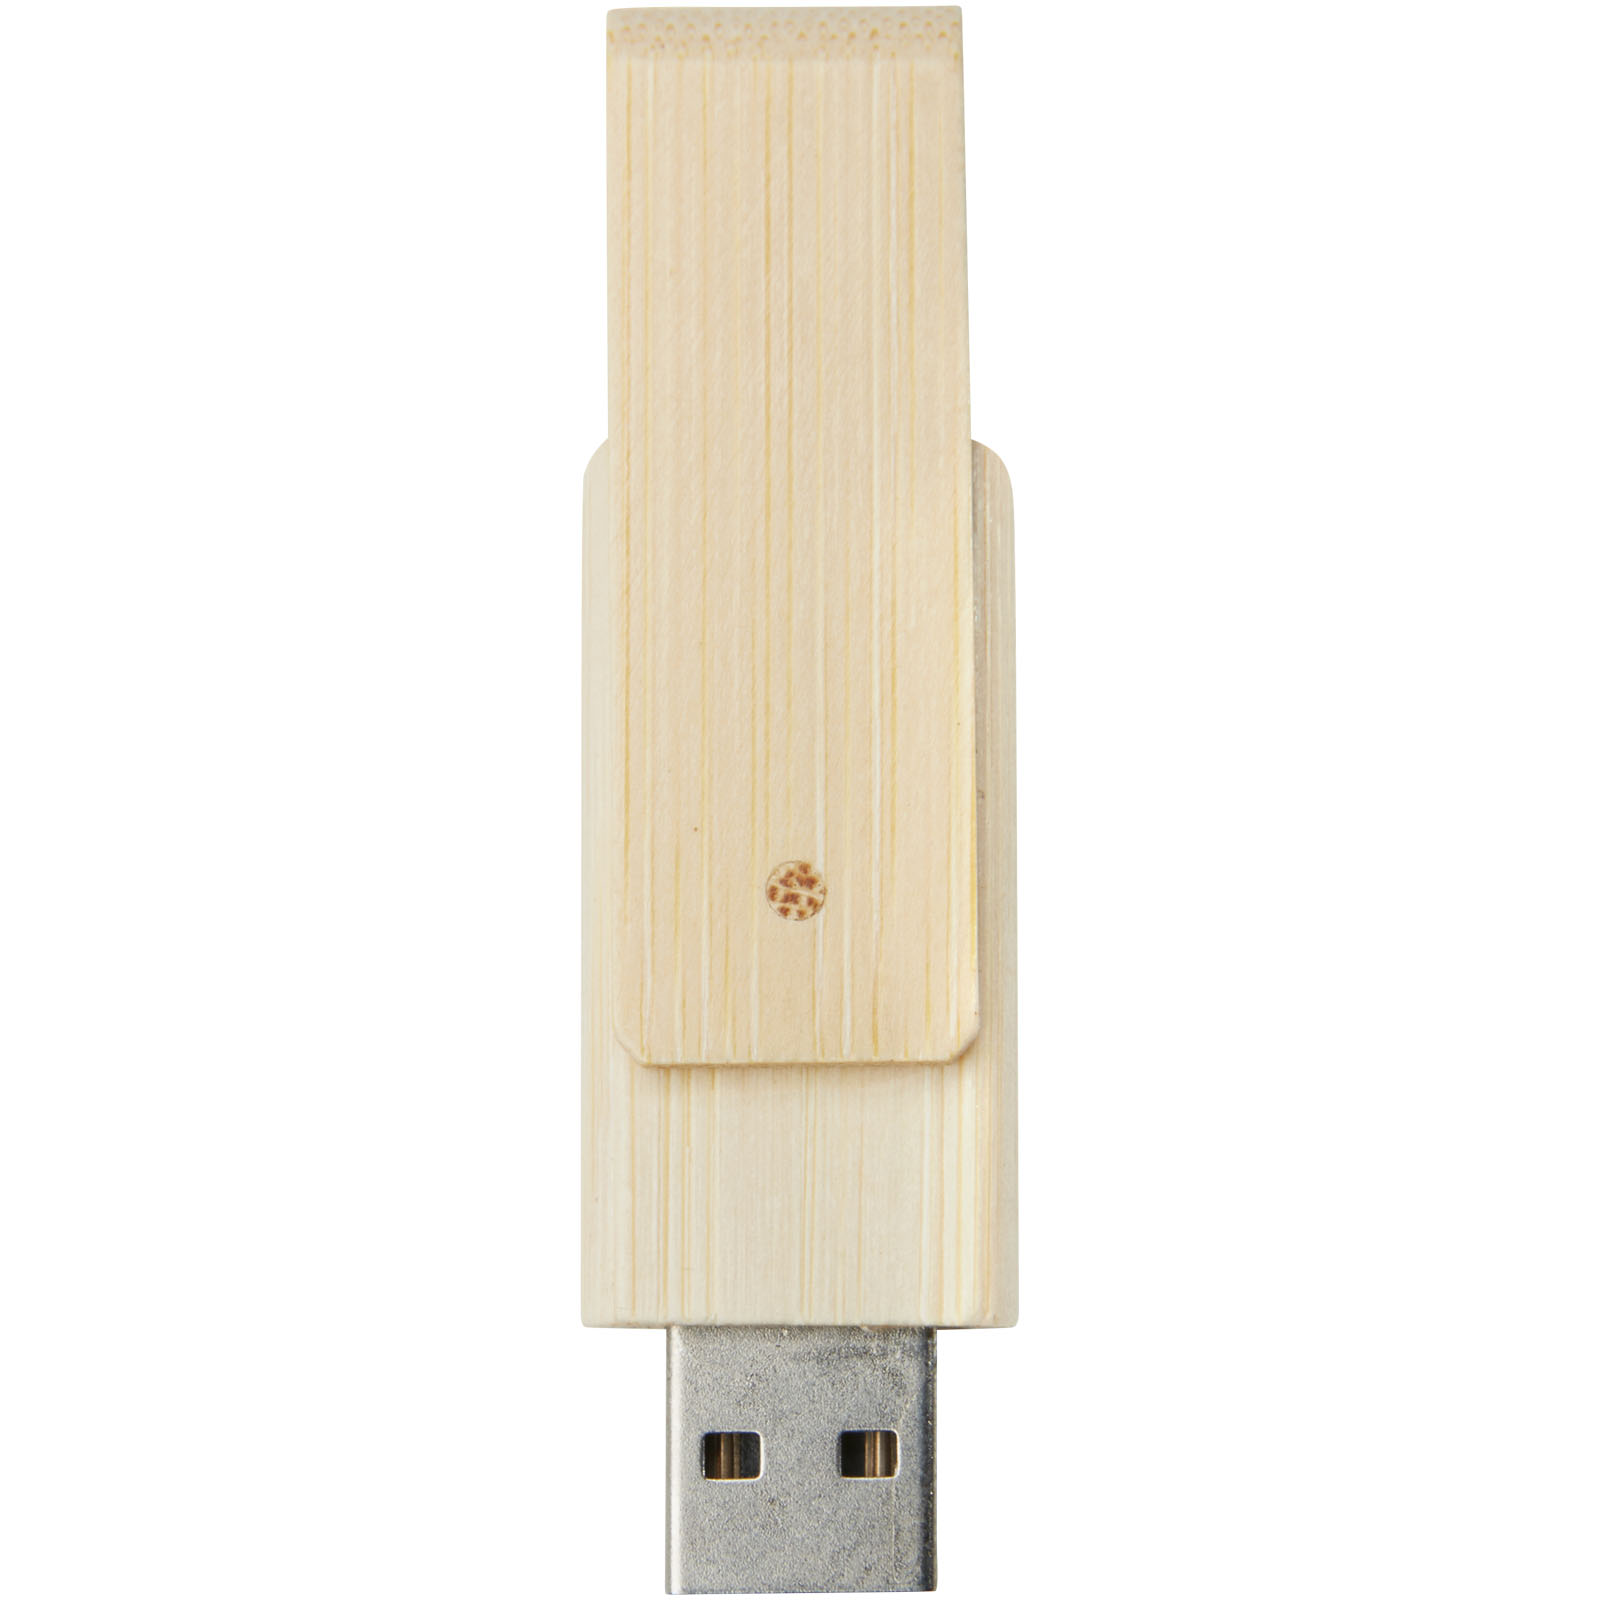 Clés USB publicitaires - Clé USB Rotate 8 Go en bambou - 1